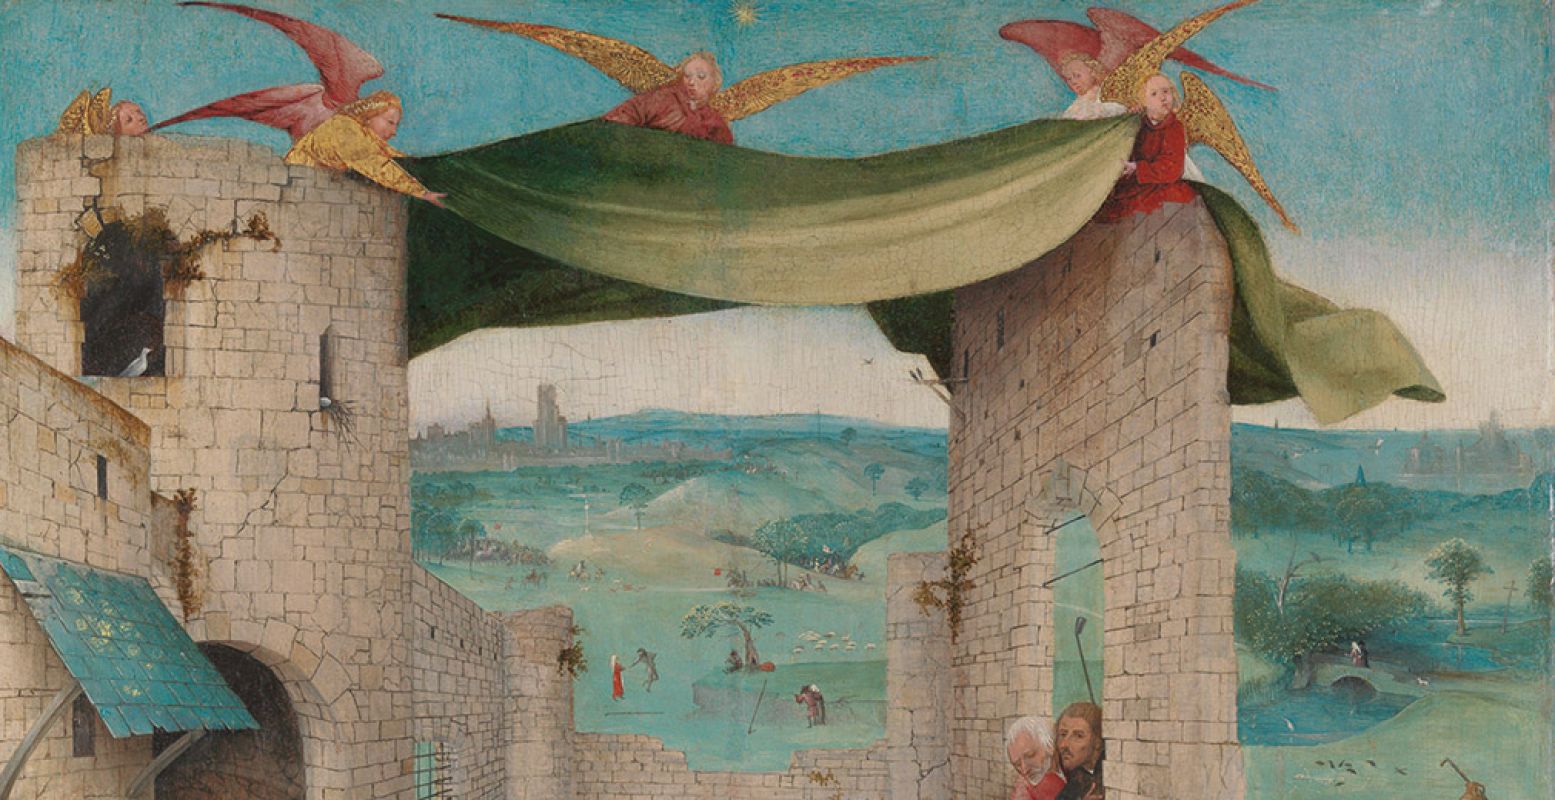 Deel van De Aanbidding der Koningen. Jheronimus Bosch. Ca. 1475, 71.1 x 56.5cm, The Metropolitan Museum of Art / John Stewart Kennedy Fund, New York. Foto: Het Noordbrabants Museum.